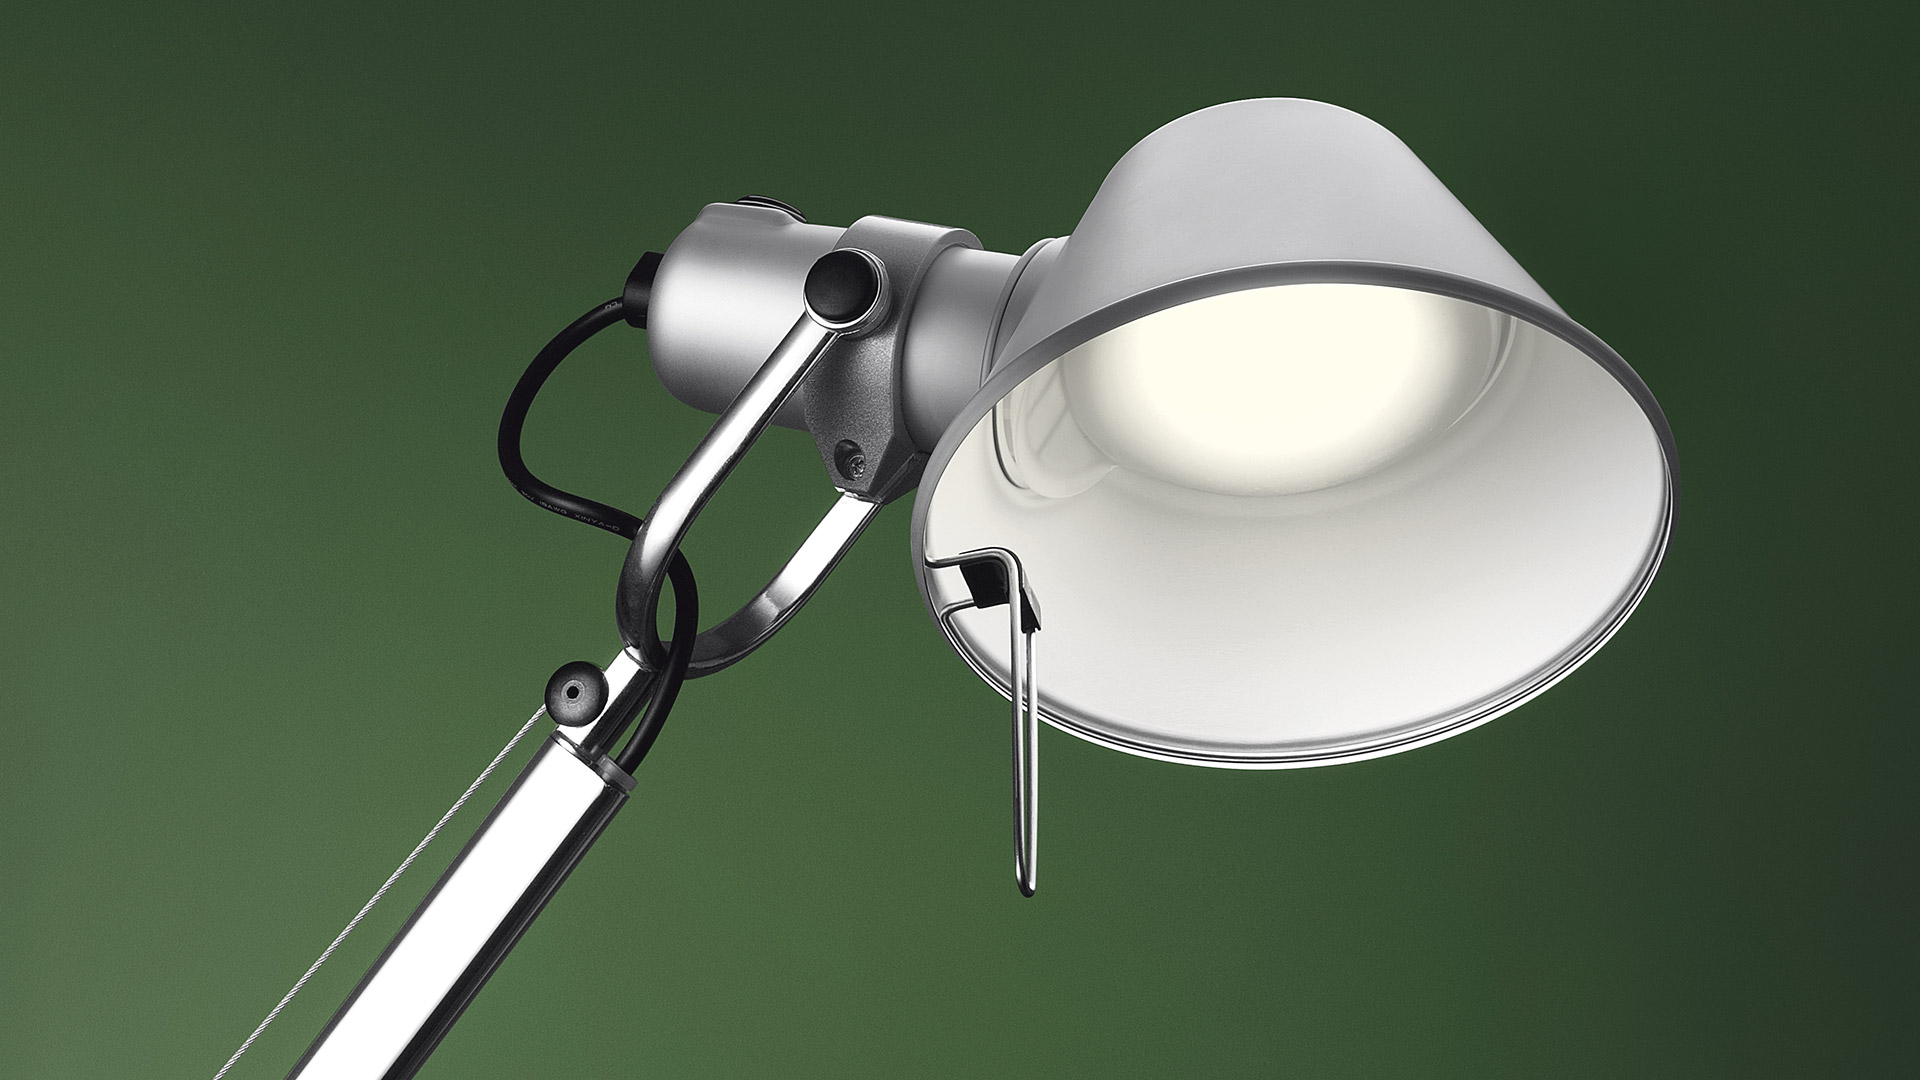 Tolomeo collection luminaire lampe de sol lampe de sol lampe de table applique artemide